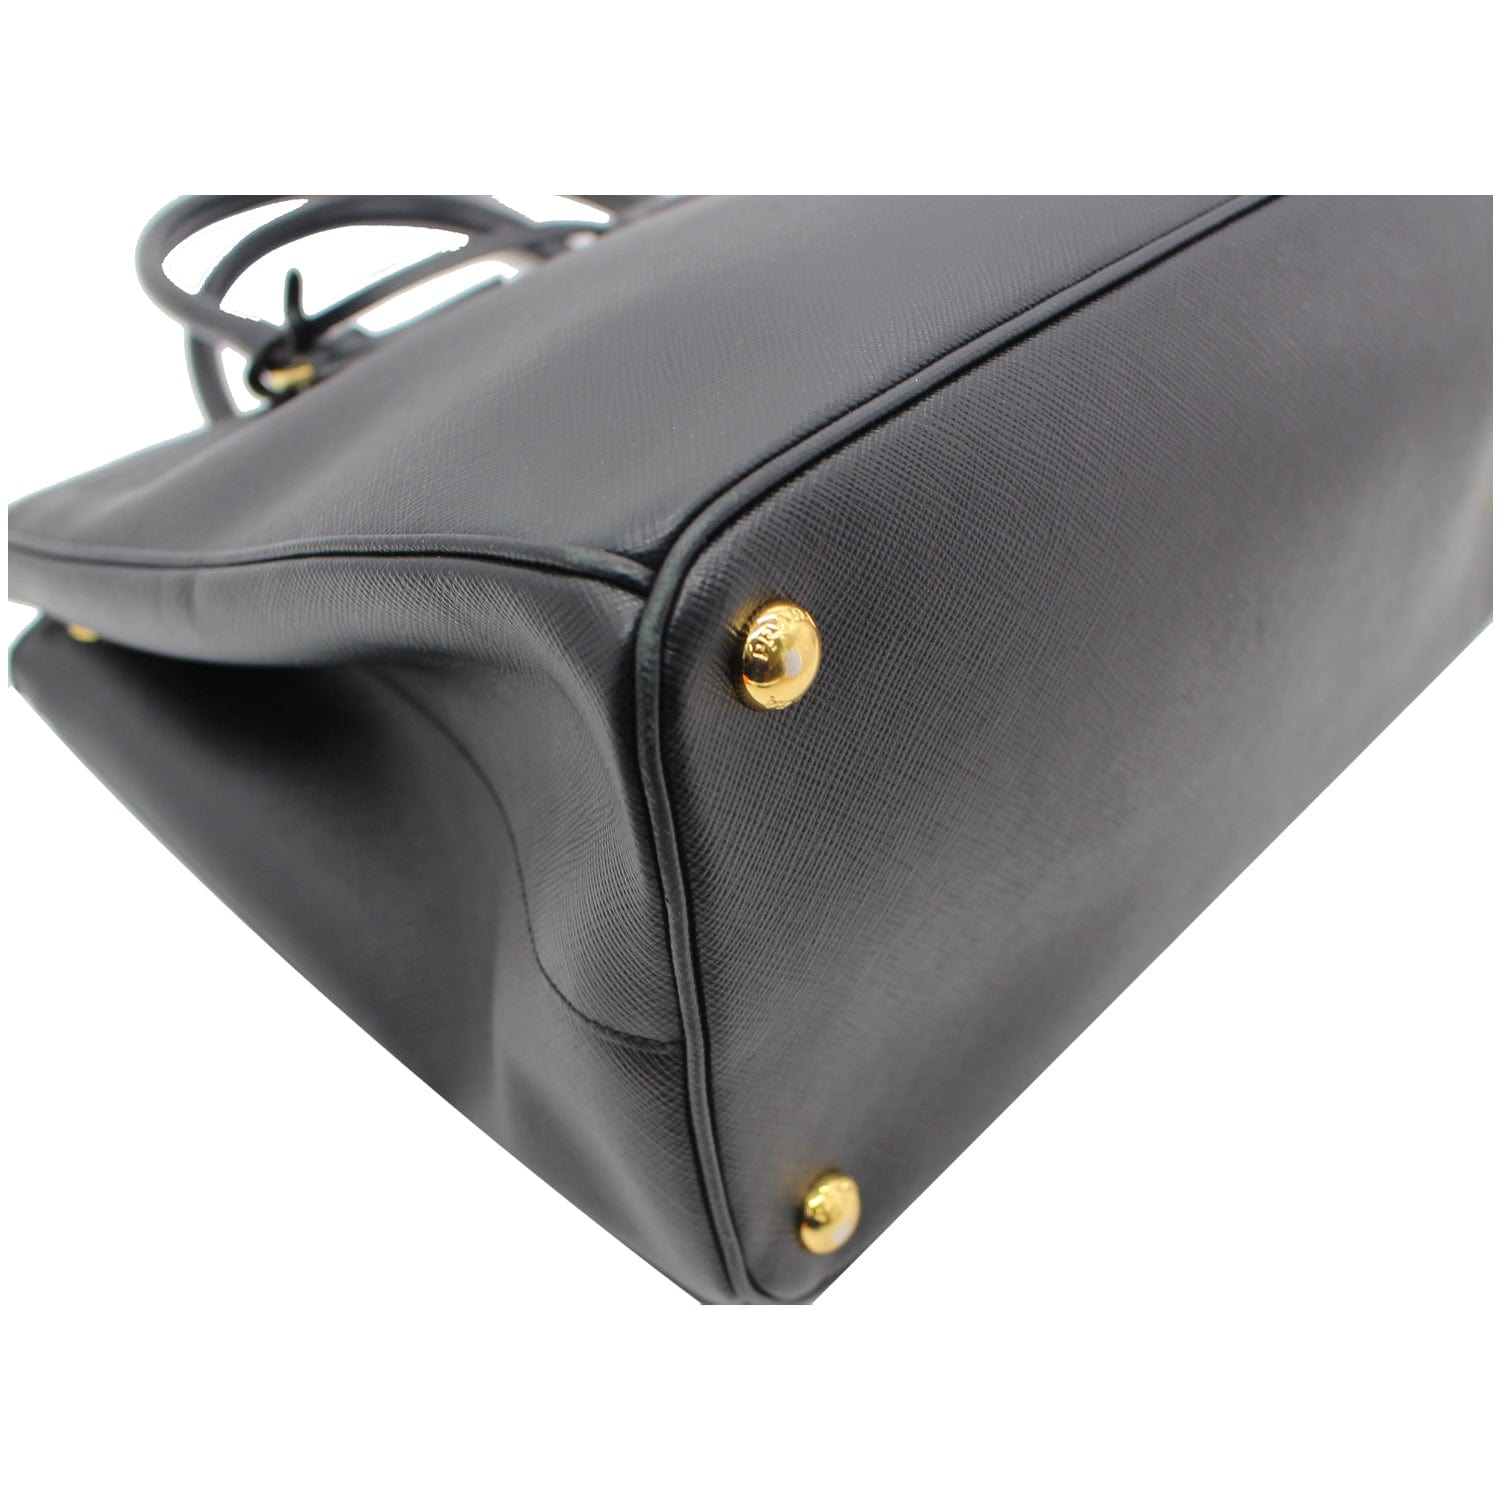 Prada Lux Medium Saffiano Leather Tote Bag